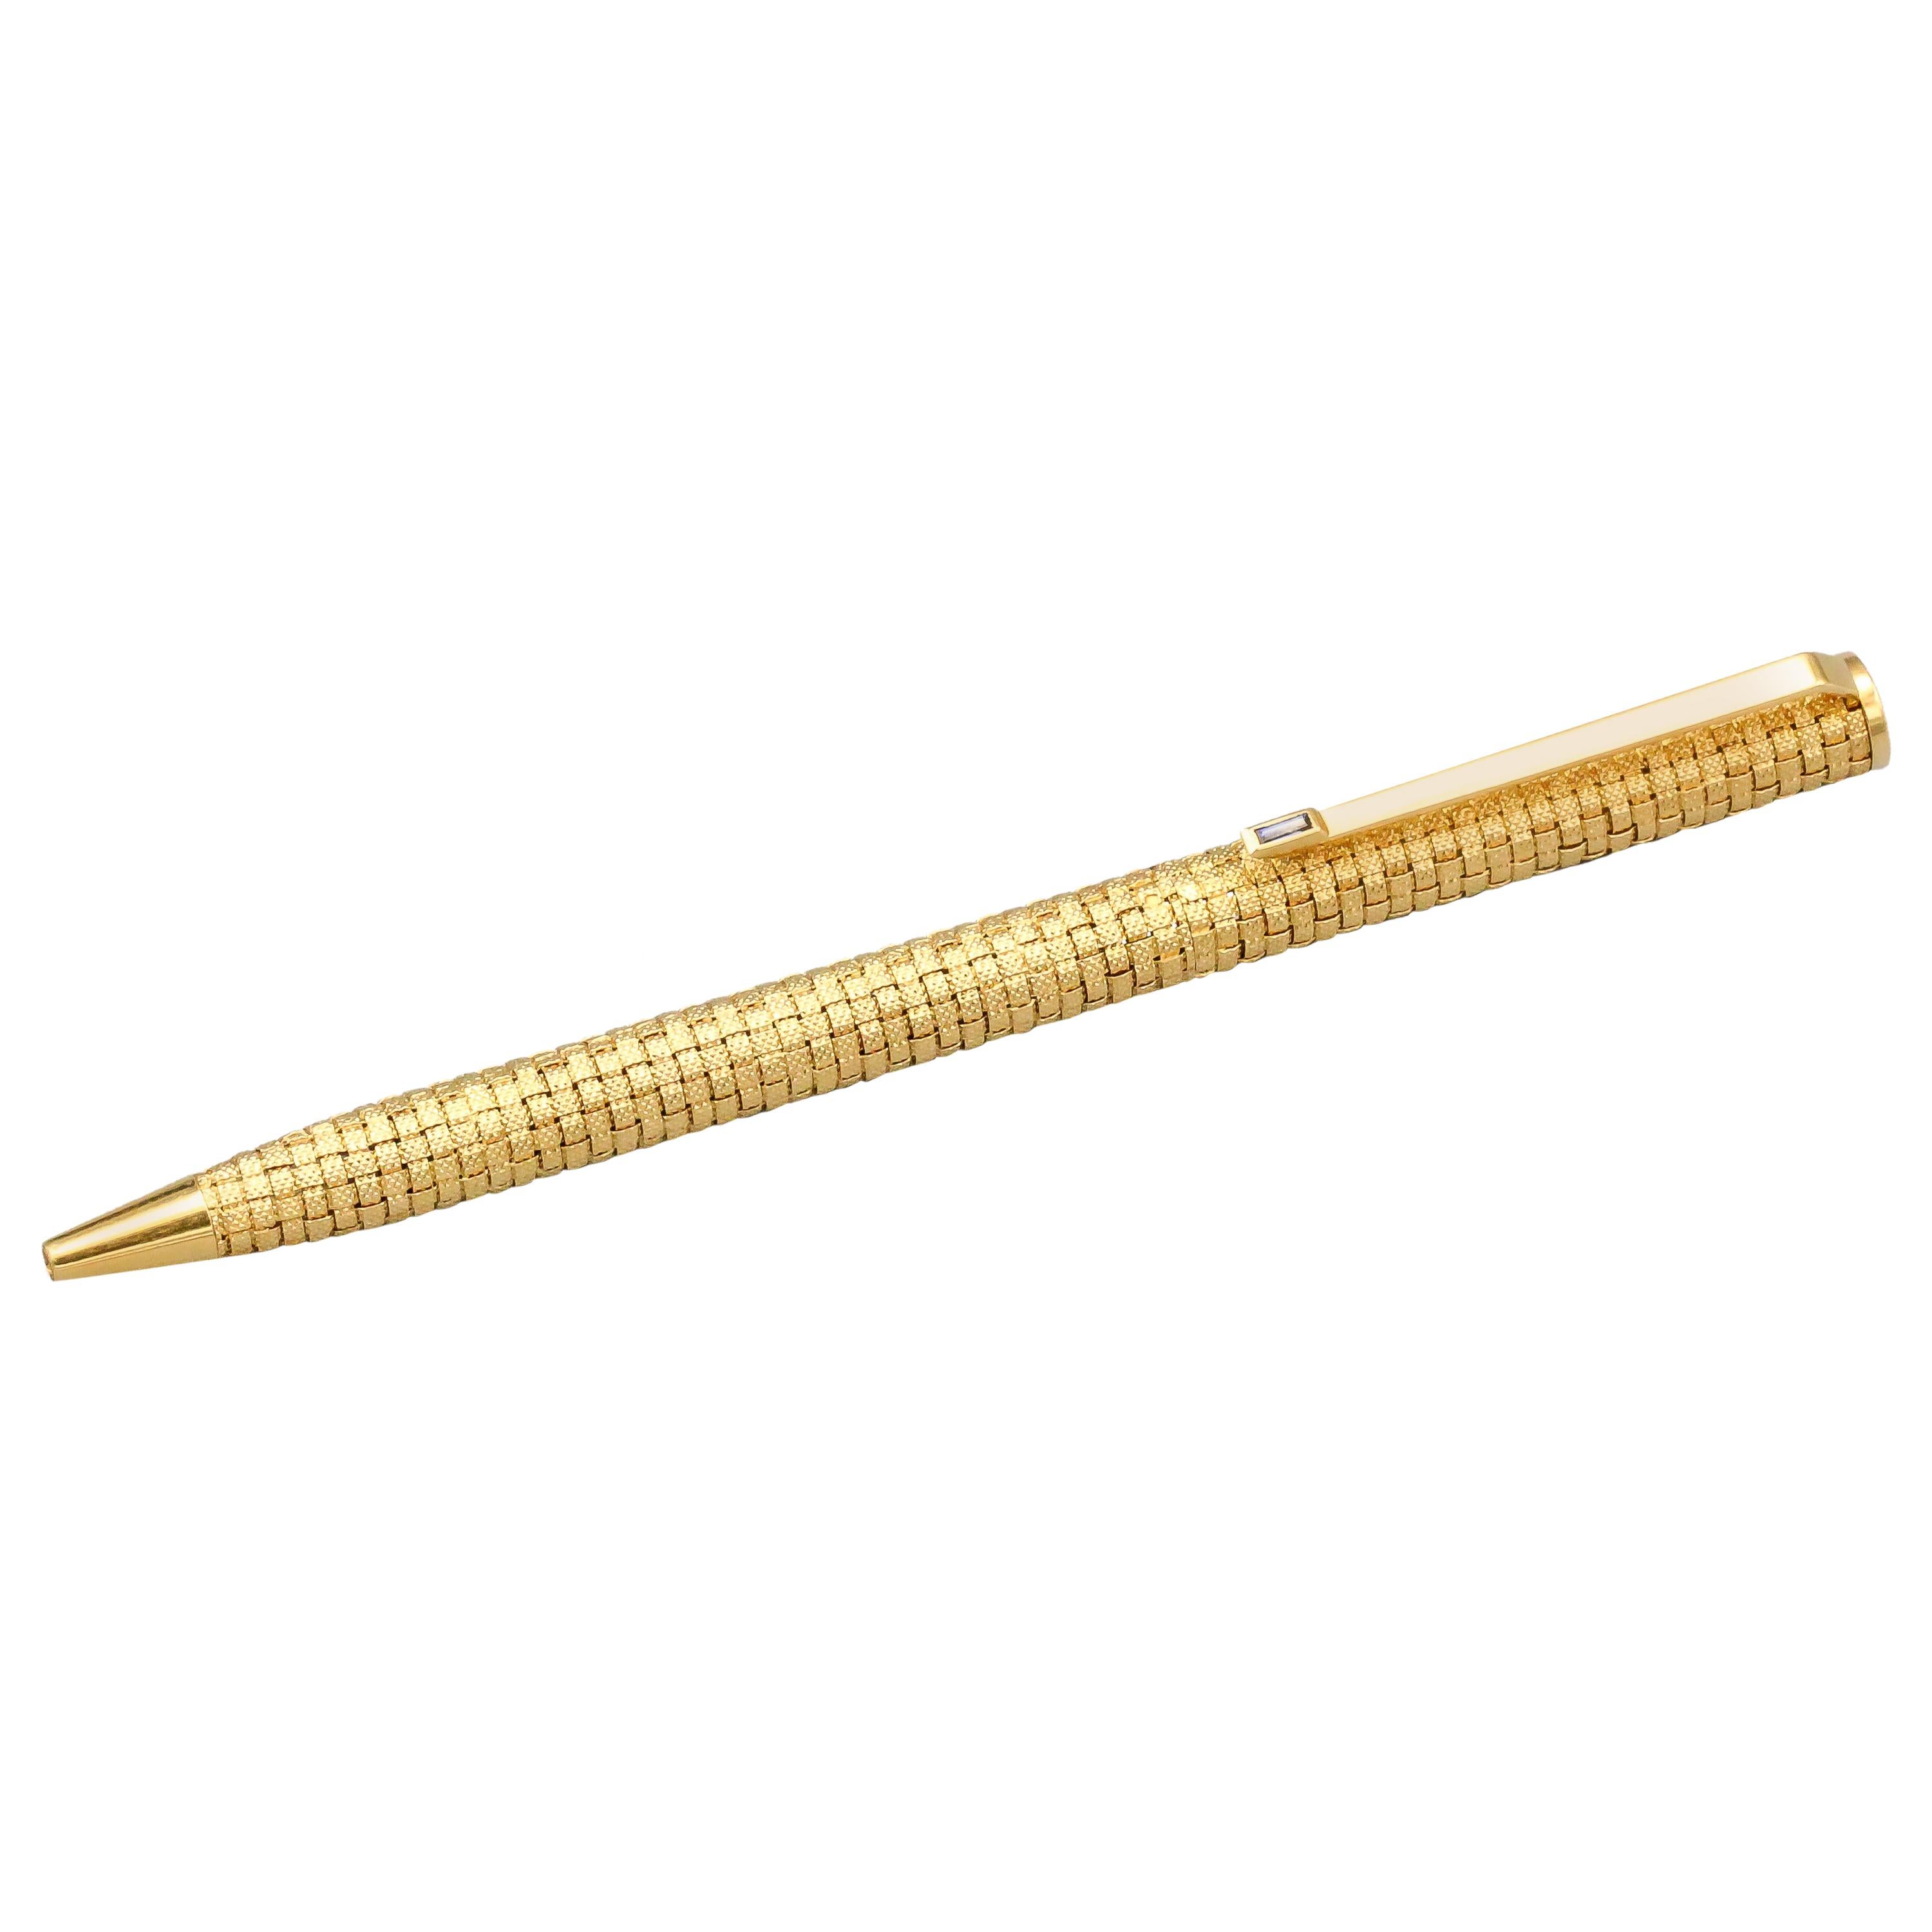 Piaget Sapphire and 18 Karat Gold Basket Weave Ballpoint Pen